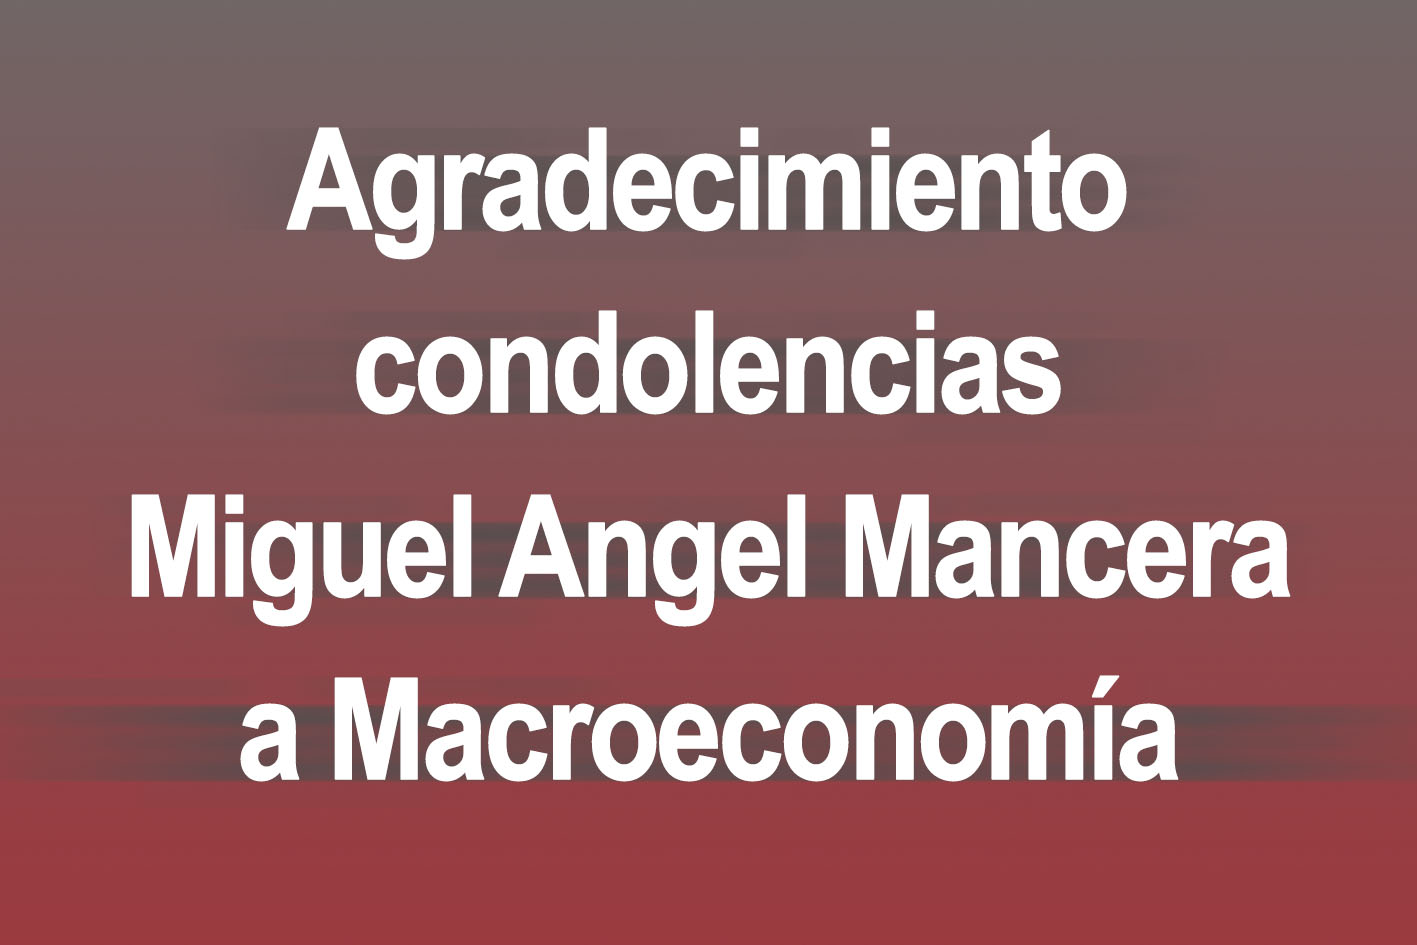 Photo of Agradecimiento condolencias Miguel Angel Mancera a Macroeconomía